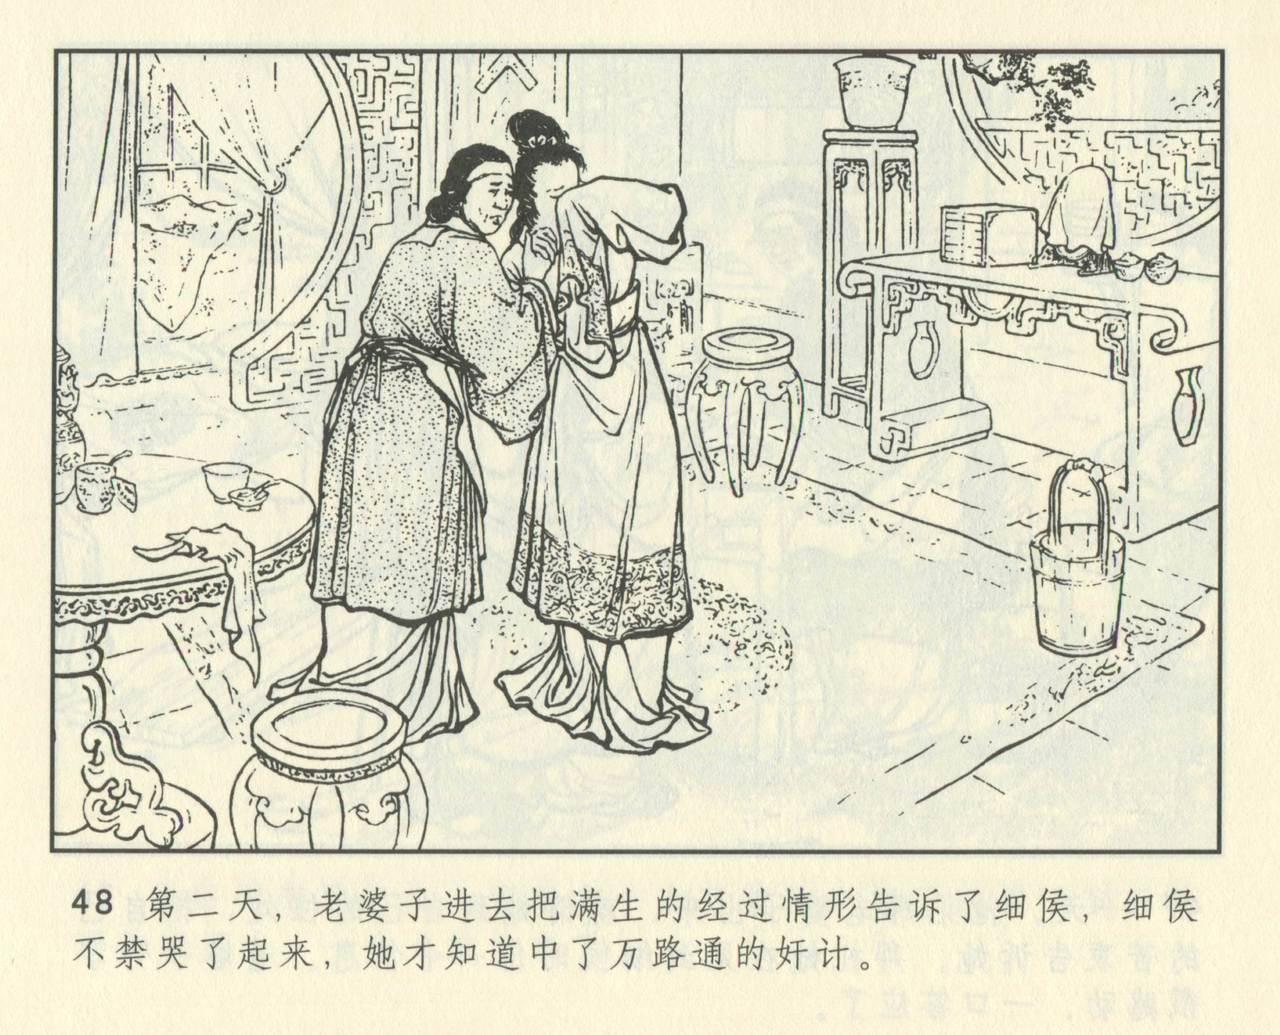 聊斋志异 张玮等绘 天津人民美术出版社 卷二十一 ~ 三十 459